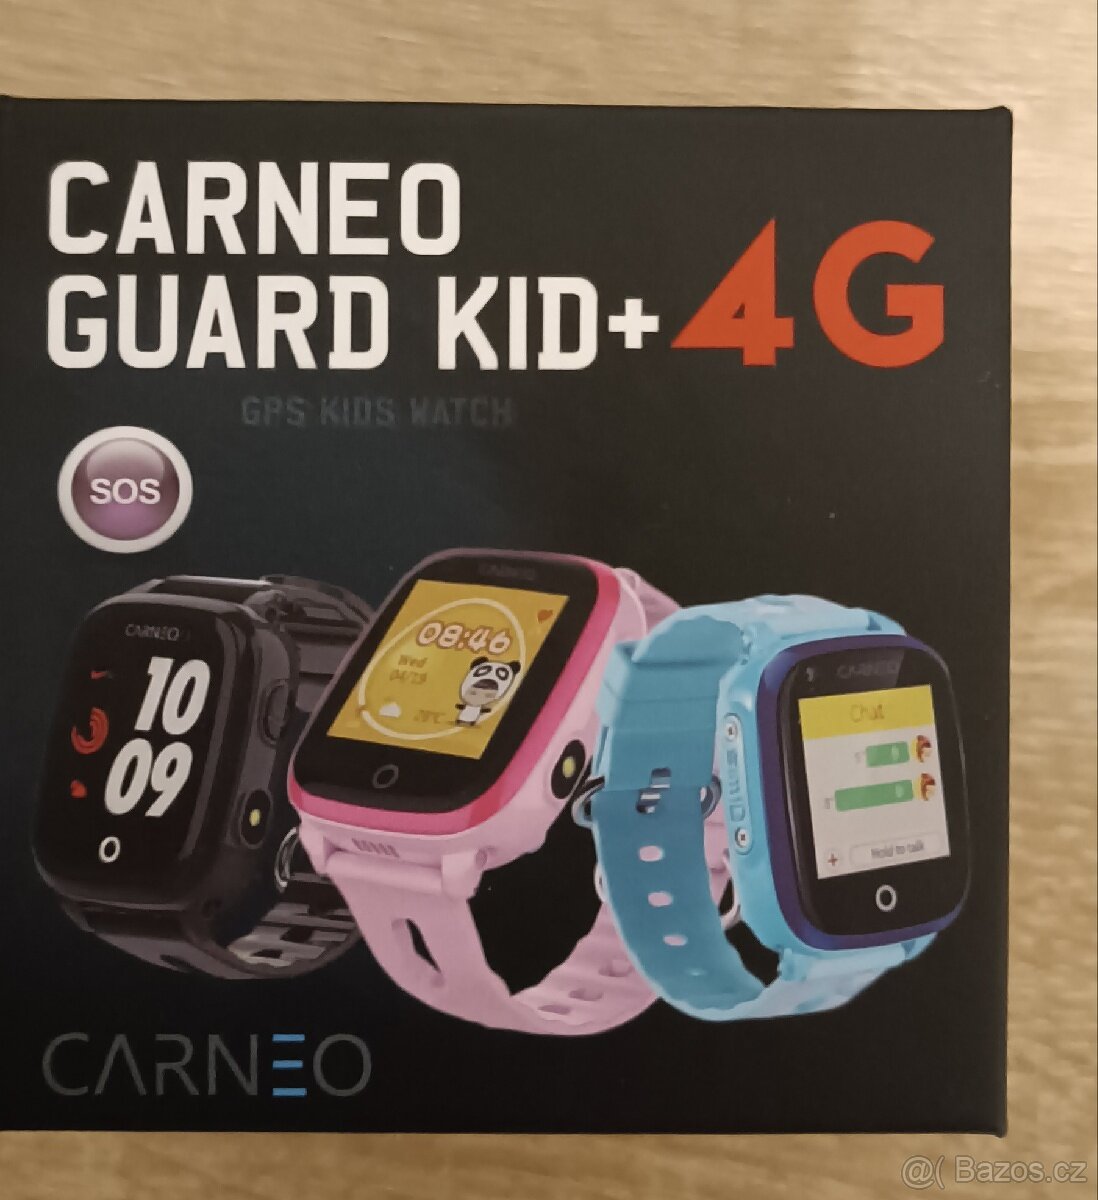 Dětské hodinky Carneo guard kid+4G